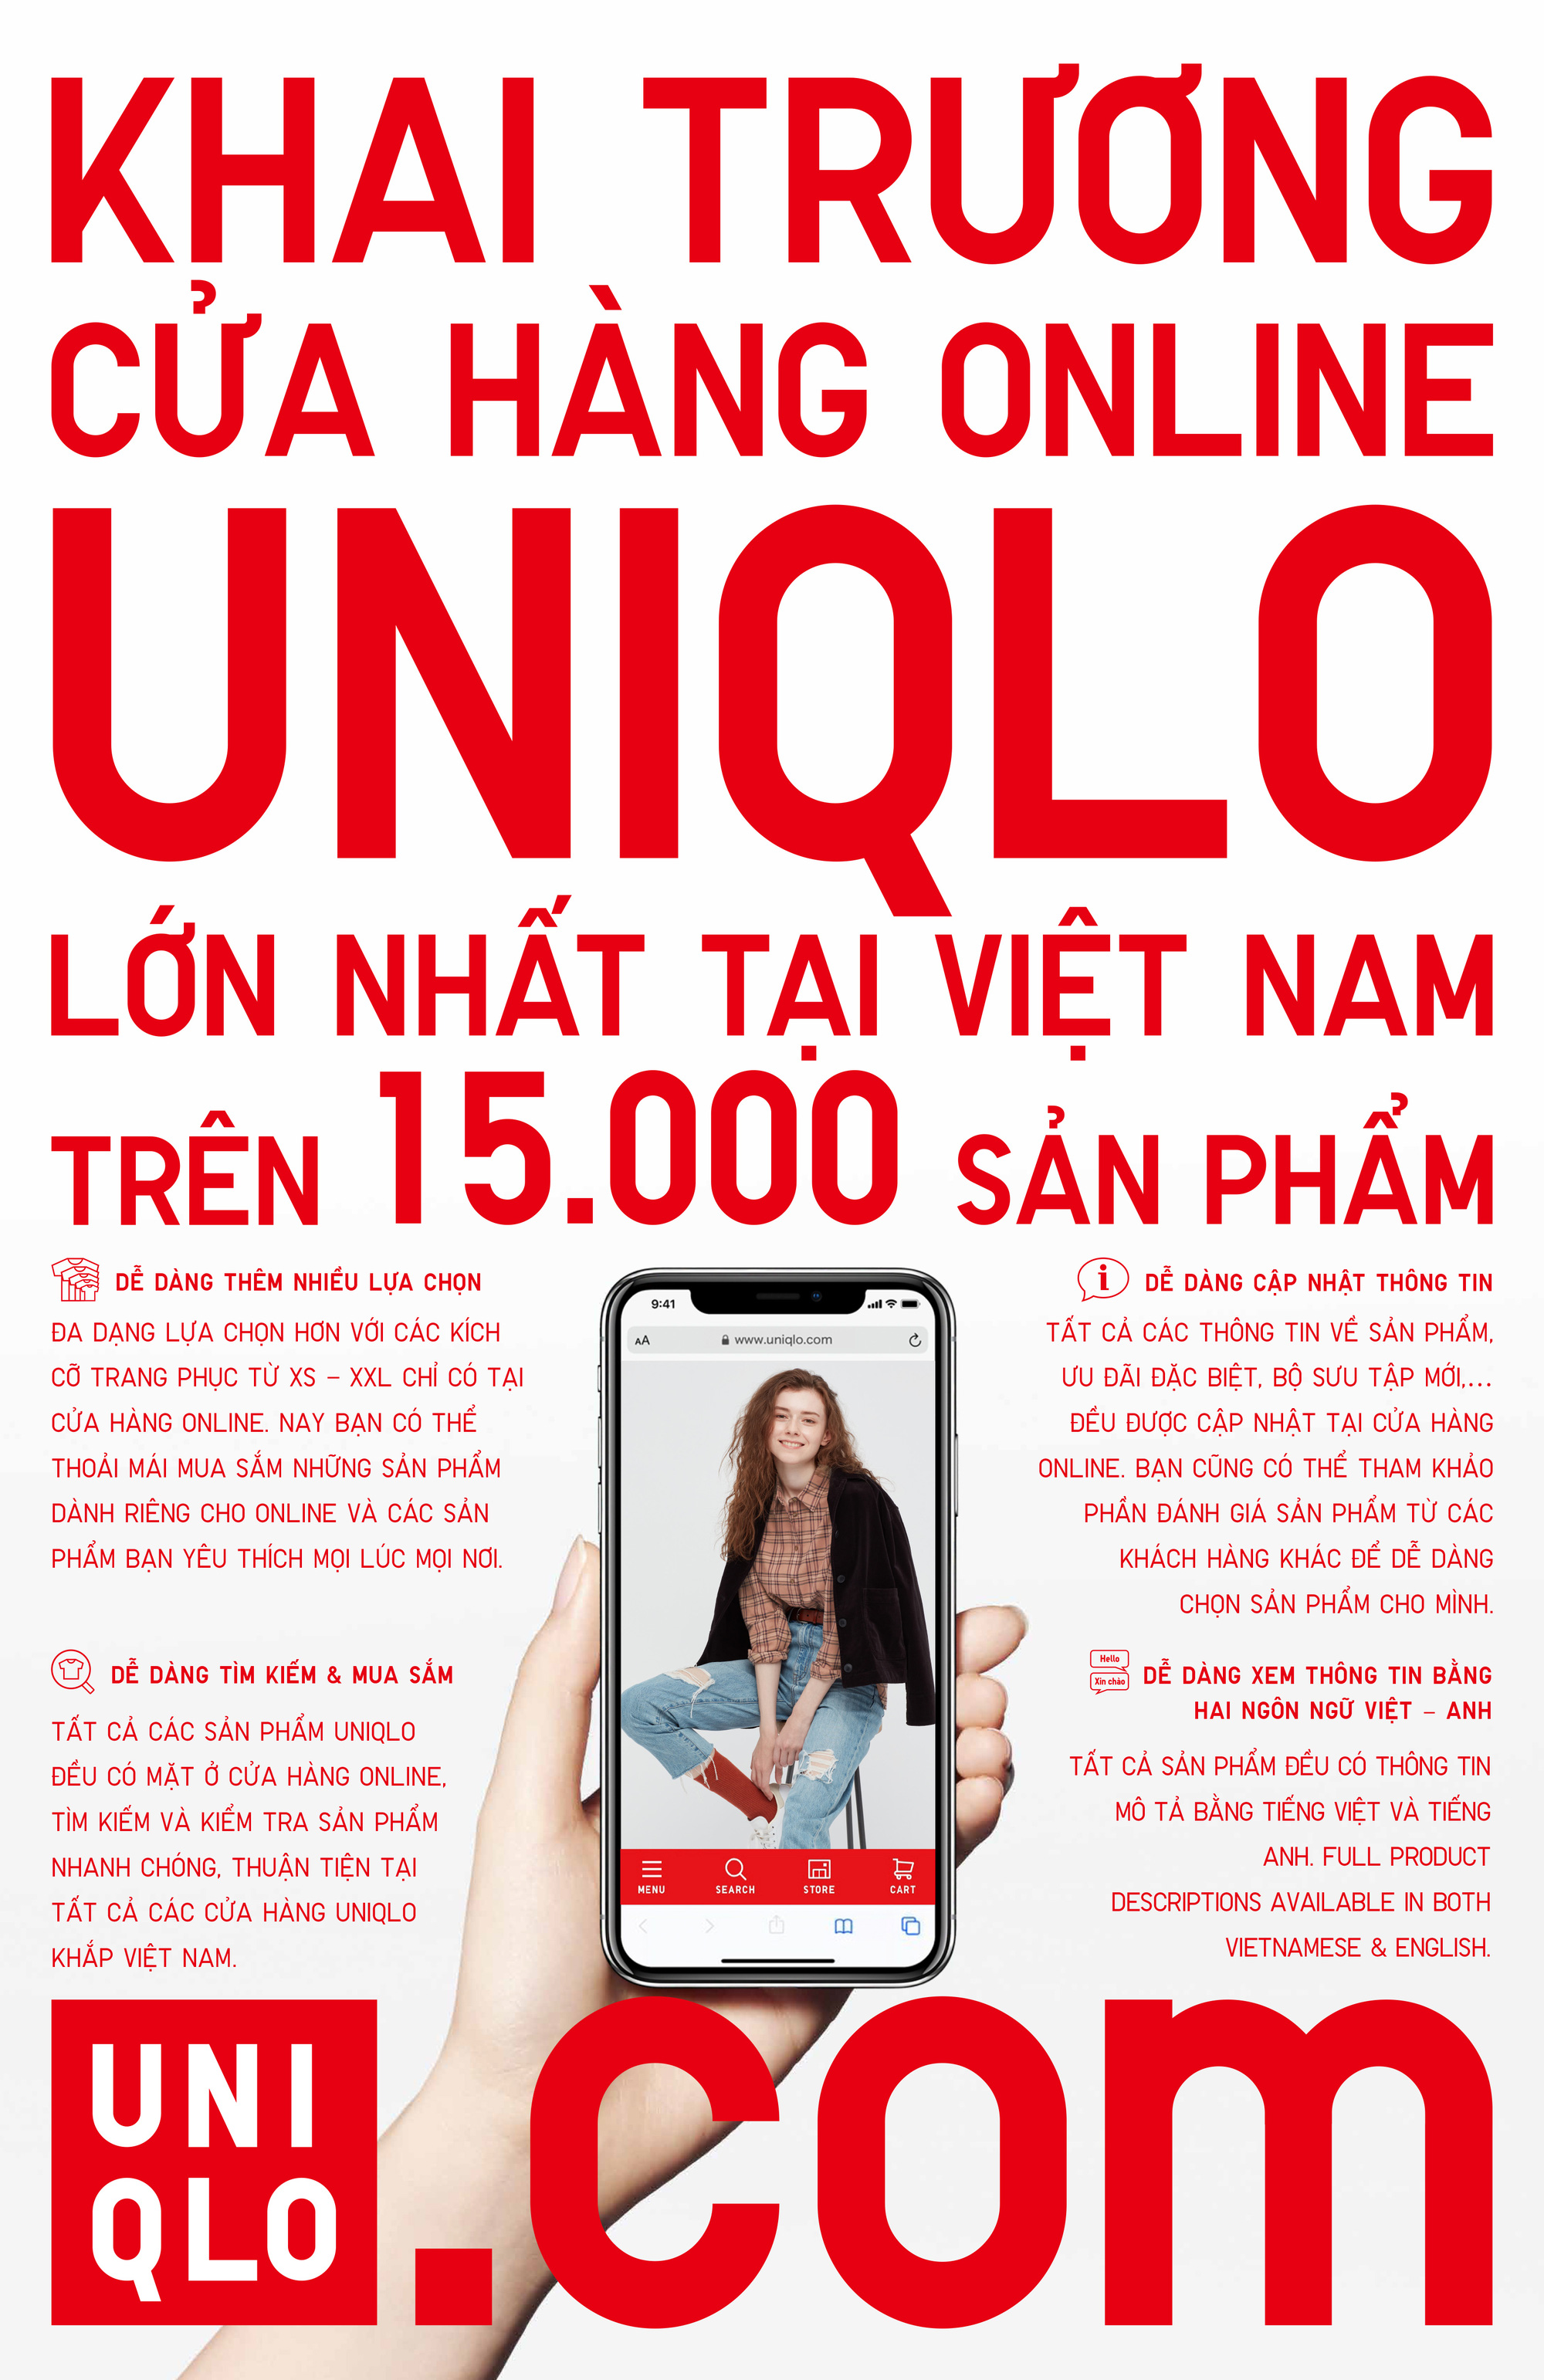 UNIQLO Vietnam on Instagram ĐỪNG BỎ LỠ CÔ HỘI SỞ HỮU BST JUJUTSU KAISEN  UT Là người luôn bắt kịp xu hướng vậy bạn có bỏ lỡ những chiếc áo trong  bộ